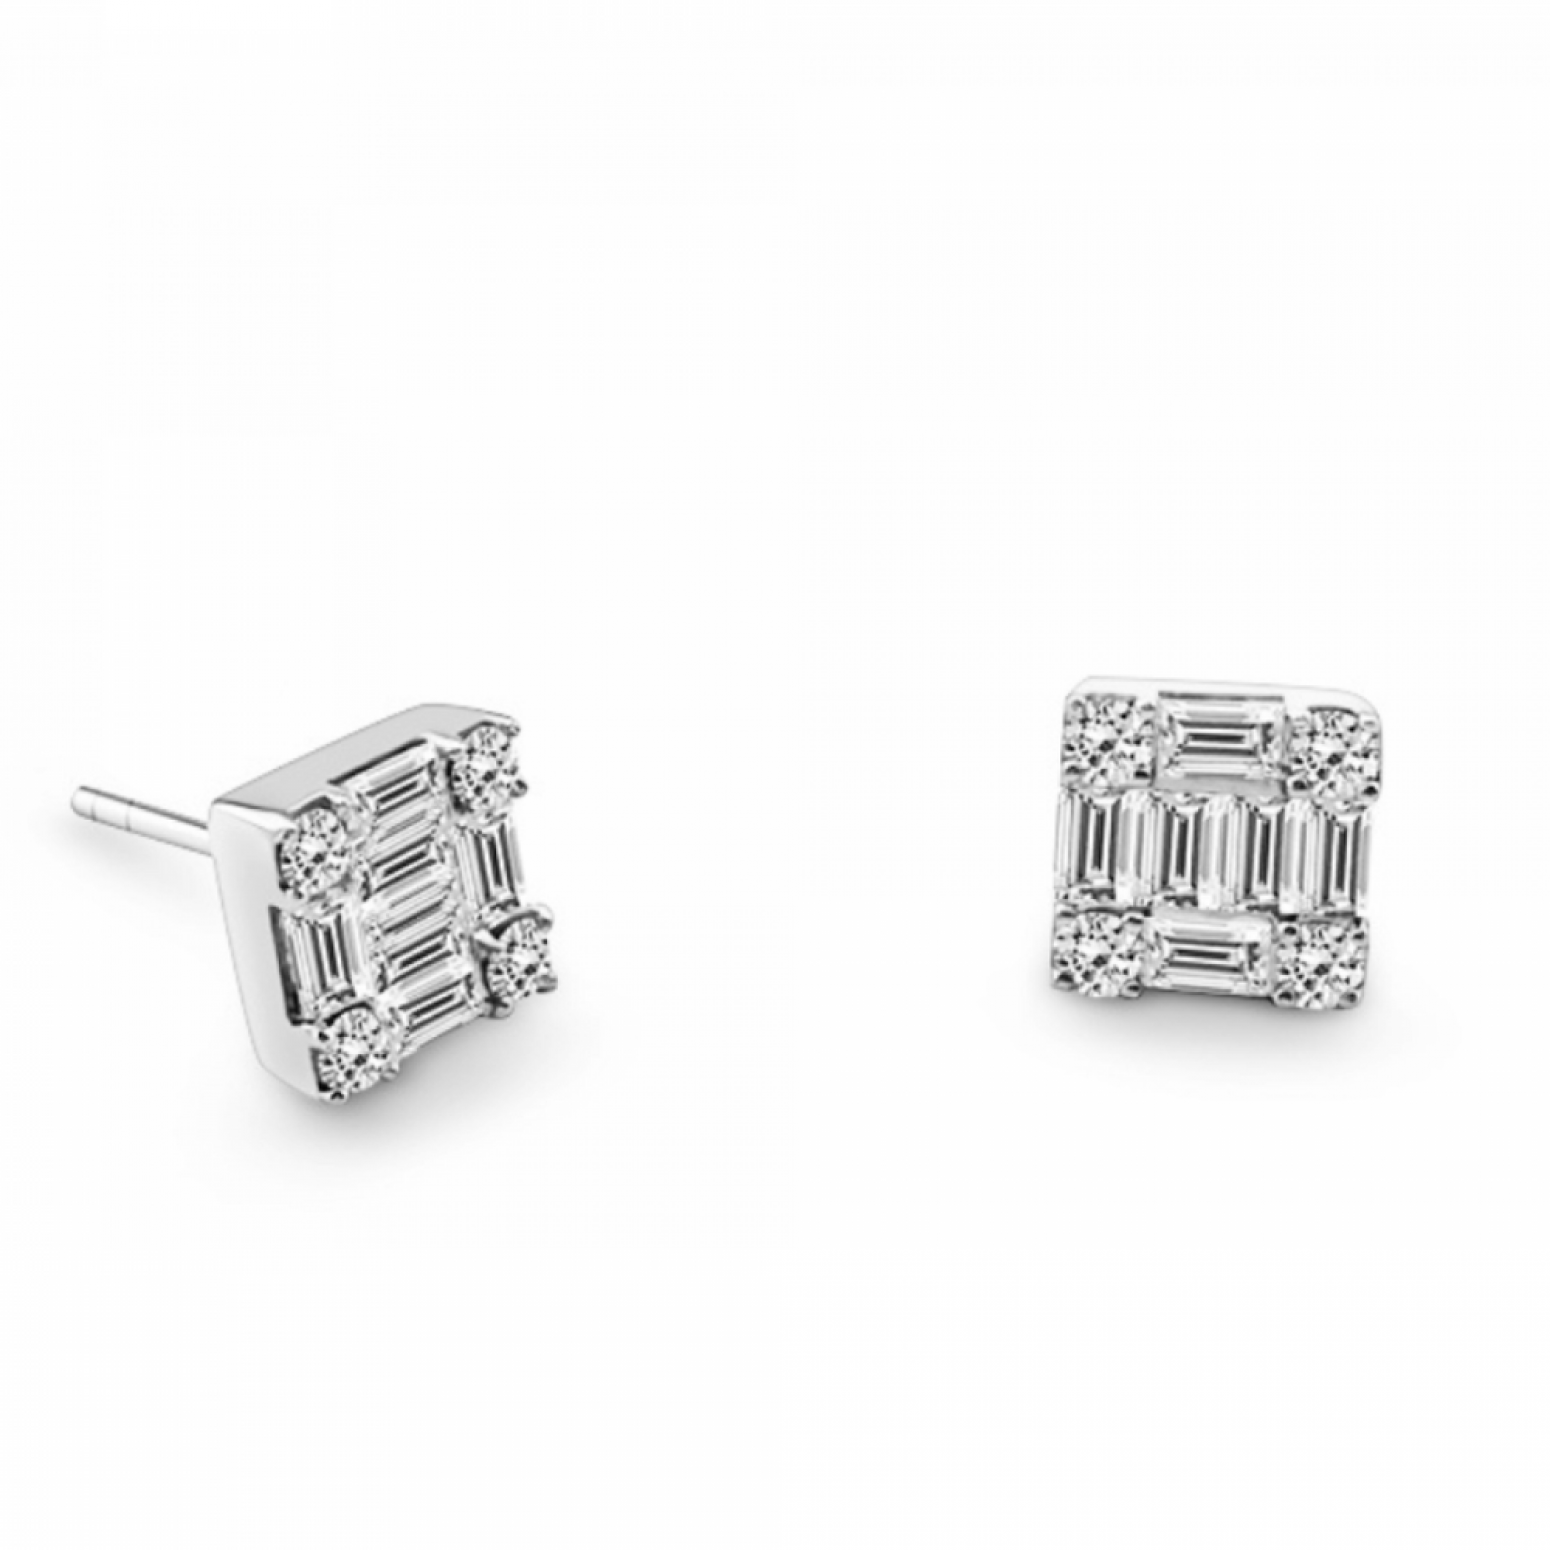 Multistone earrings 18K white gold with diamonds 0.92ct, VVS1, F, sk4036 EARRINGS Κοσμηματα - chrilia.gr